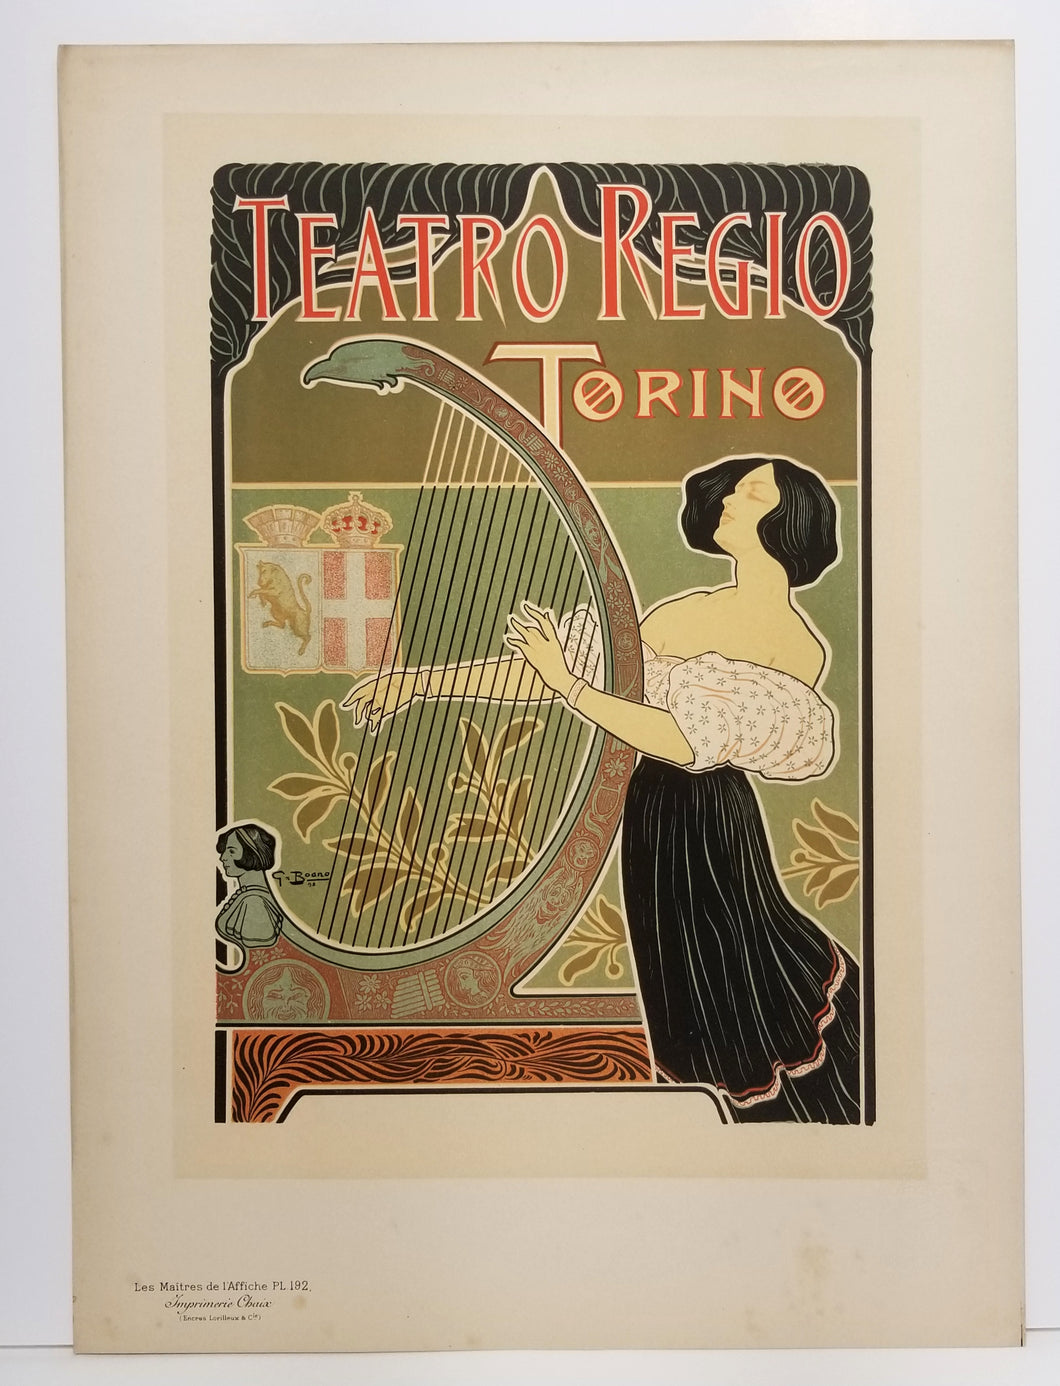 Théâtre royal de Turin. 1899.